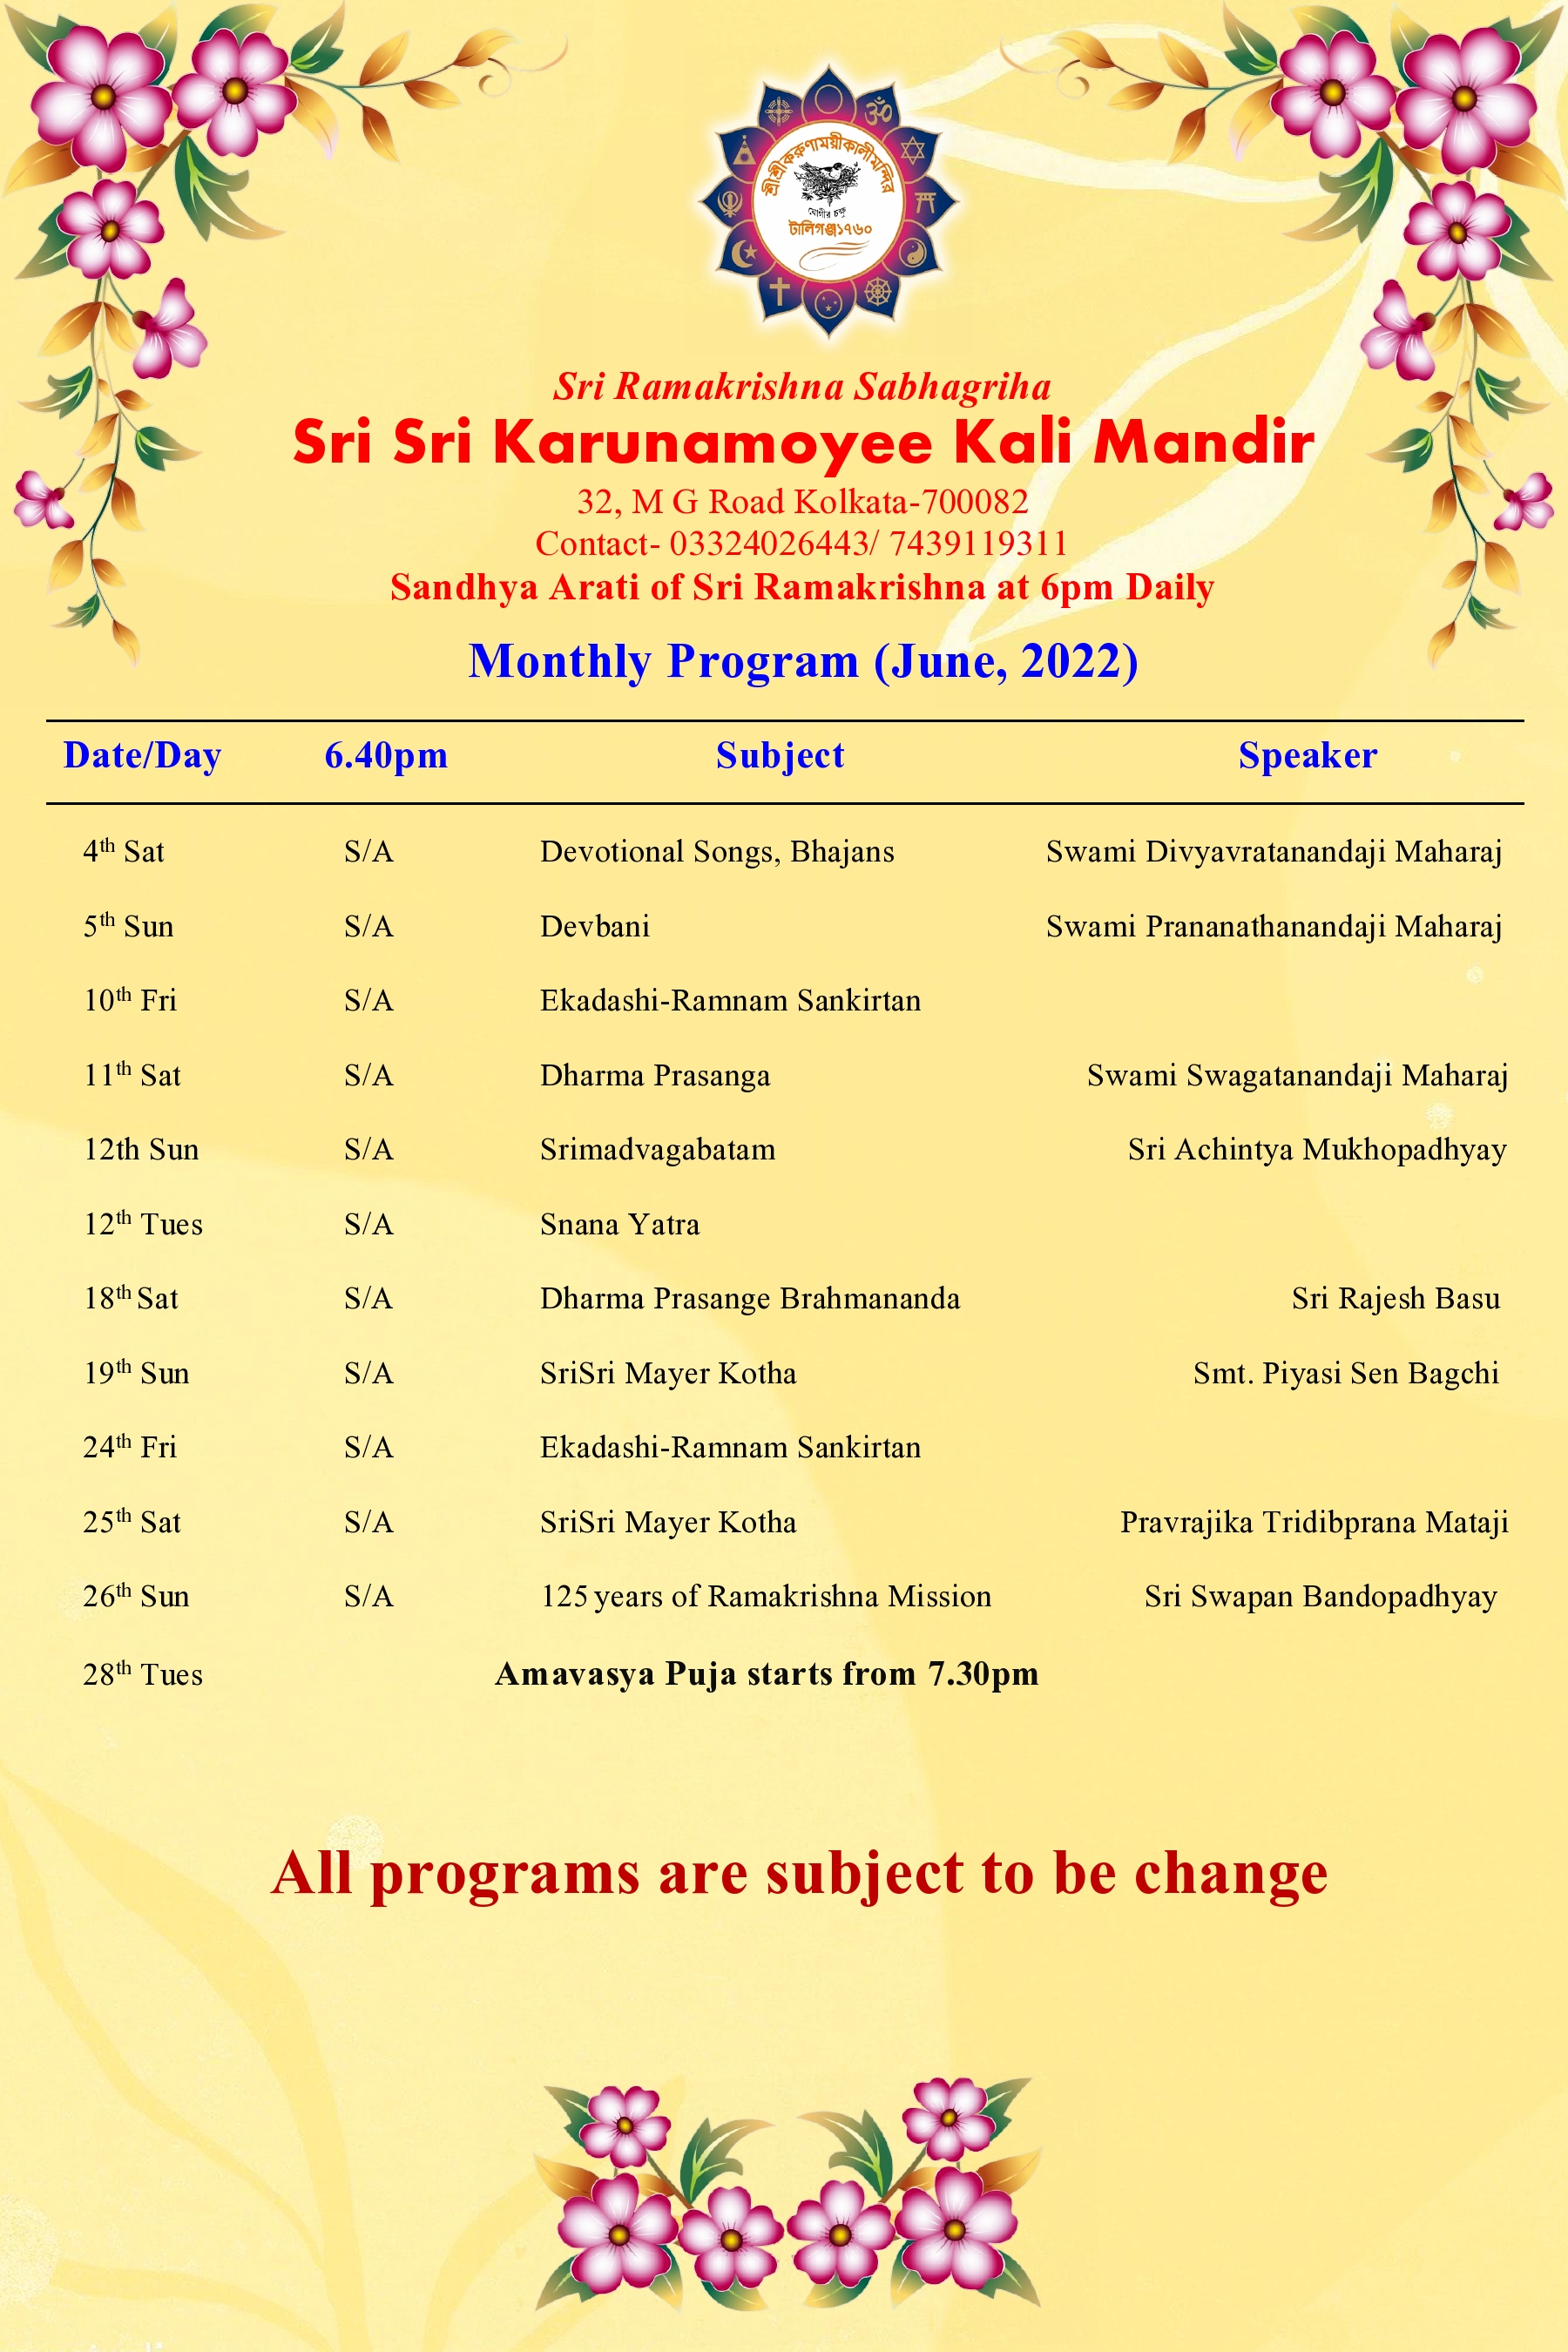 Sri Sri Karunamoyee Kali Mandir